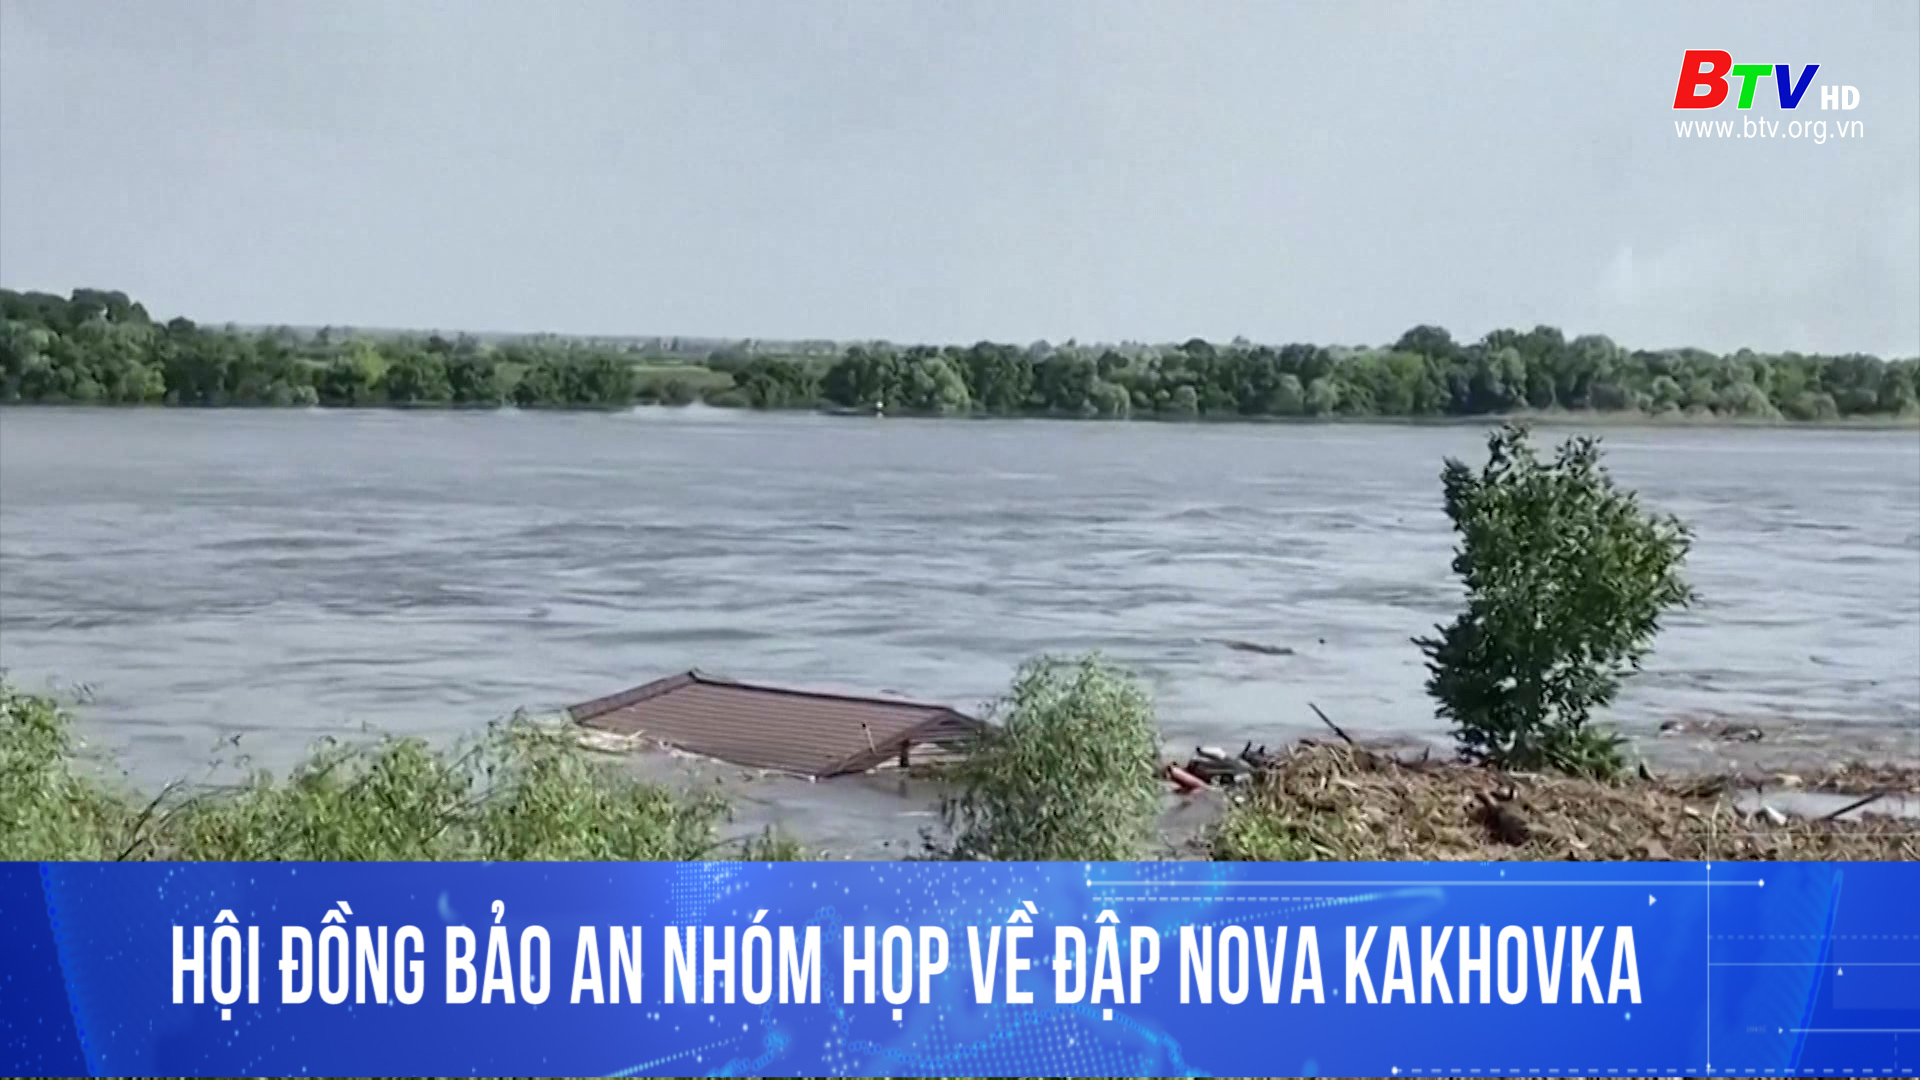 Hội đồng bảo an nhóm họp về đập Nova Kakhovka